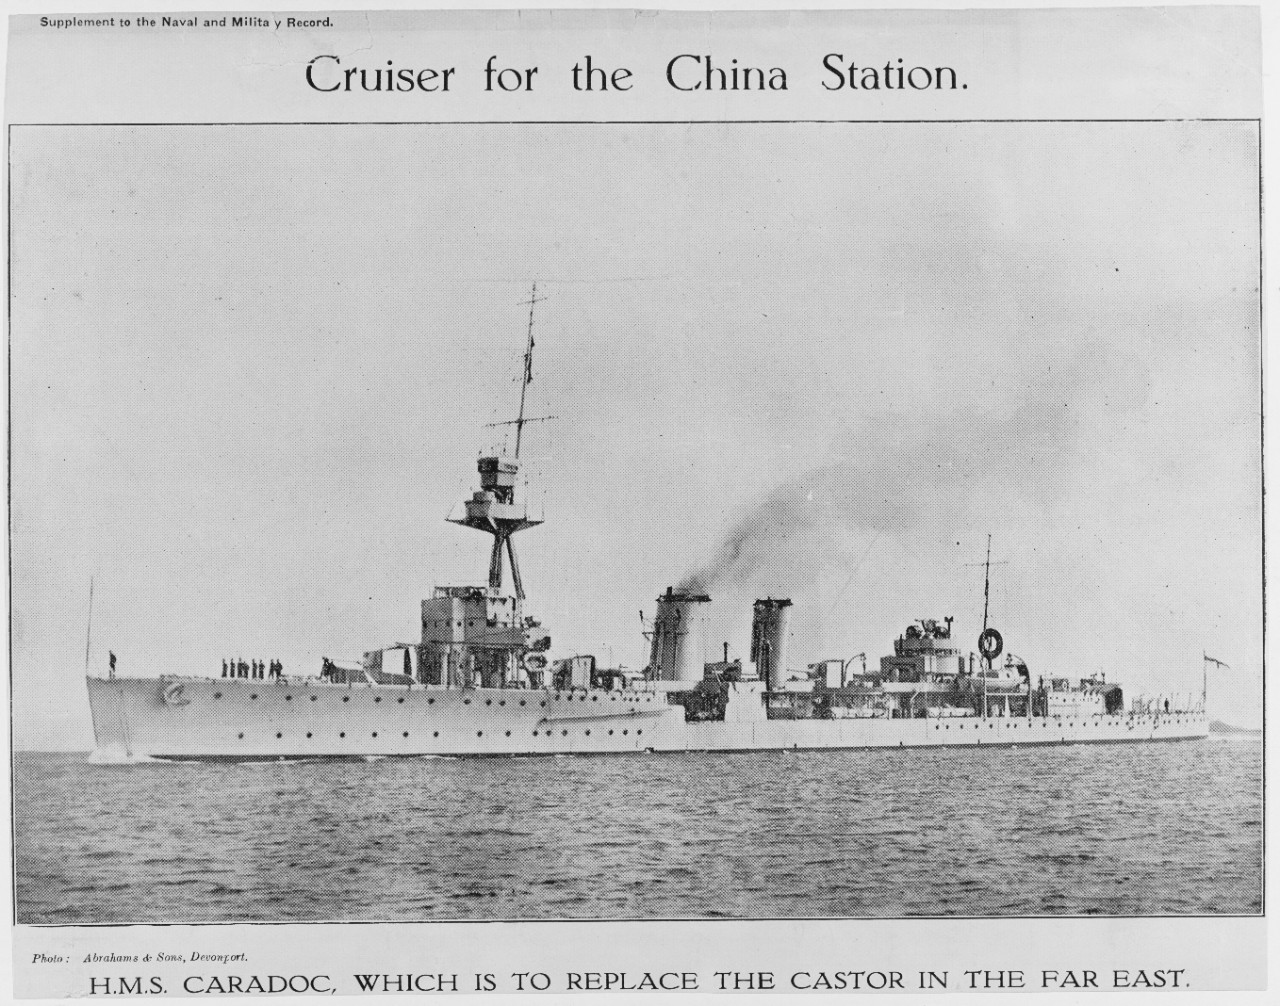 HMS CARADOC (British Cruiser, 1916)